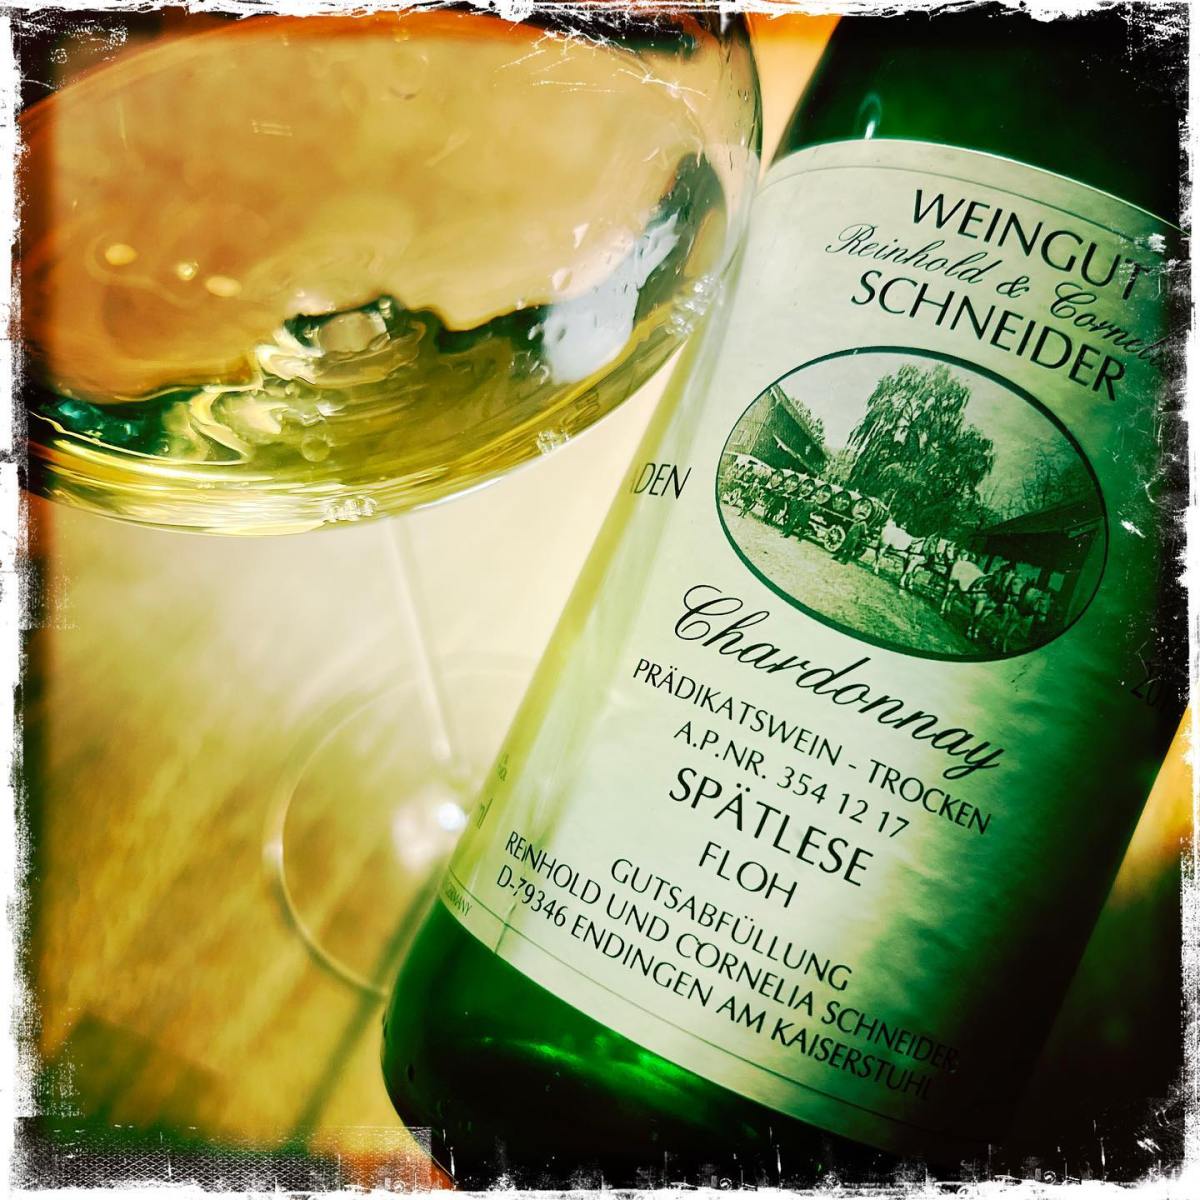 Weingut Schneider, Endingen: Chardonnay Spätlese Floh 2015